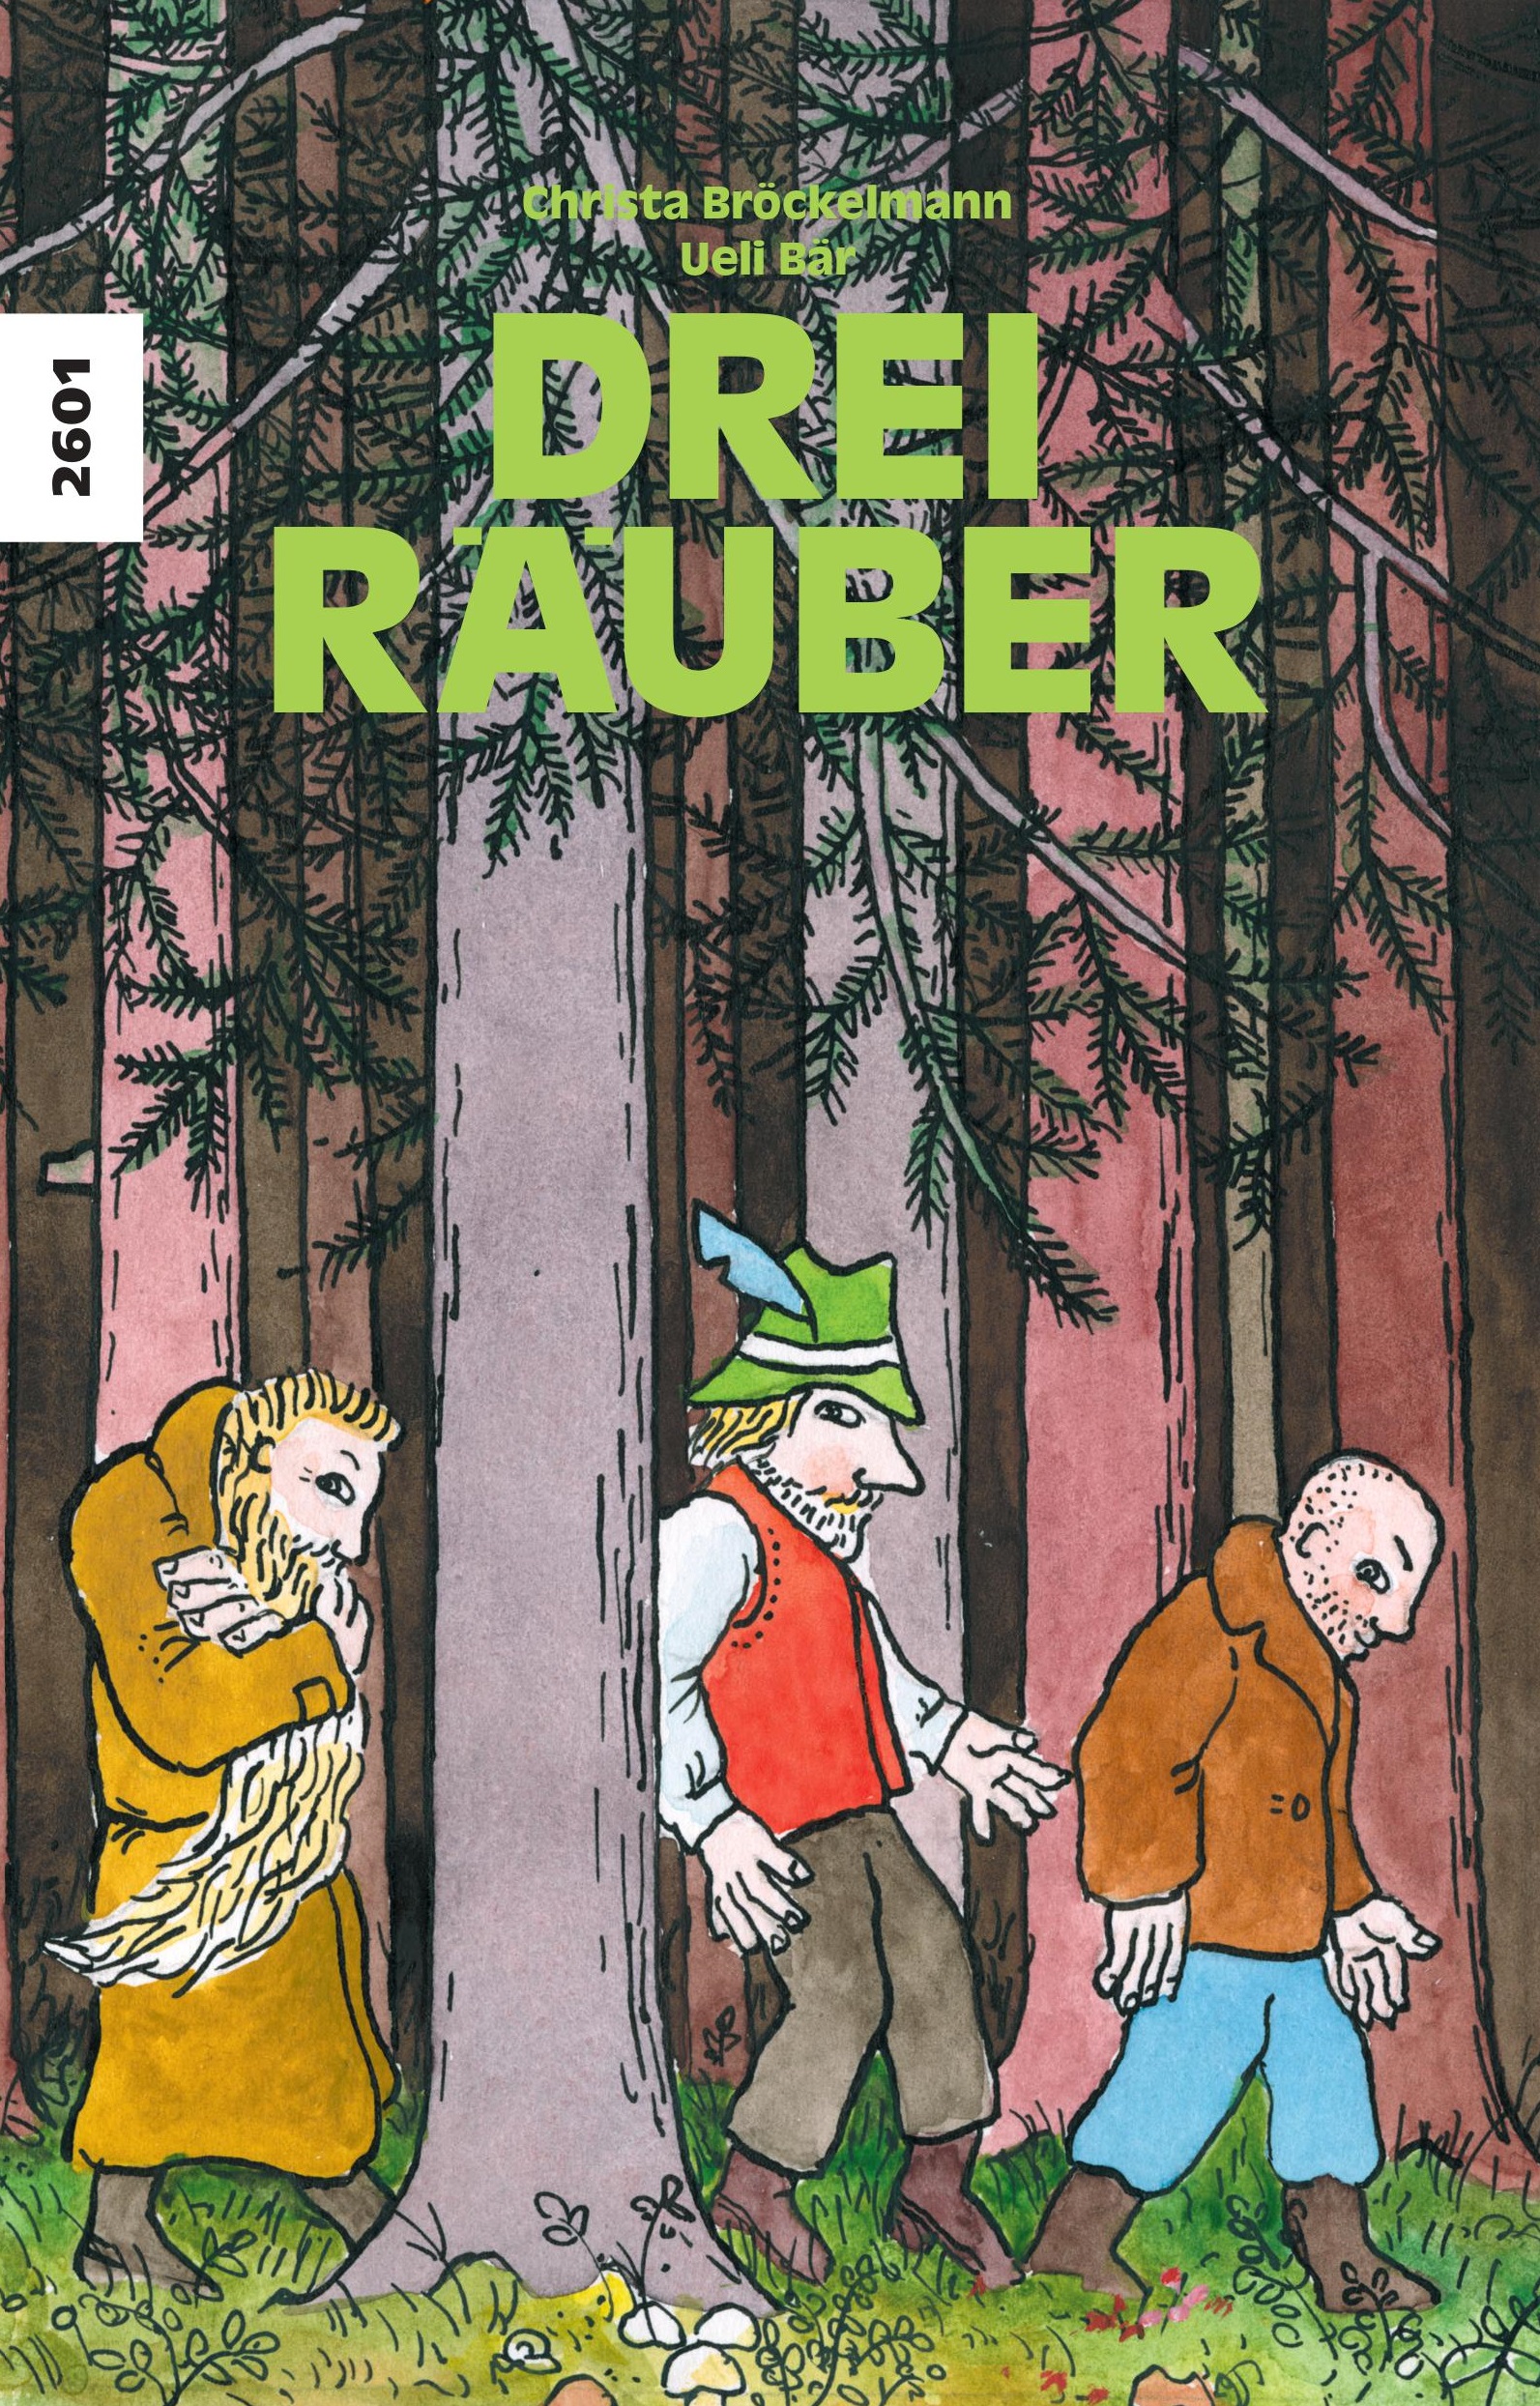 Drei Raeuber, ein Kinderbuch von Christa Broeckelmann, Illustration von Ueli Baer, SJW Verlag, Raeubergeschichte